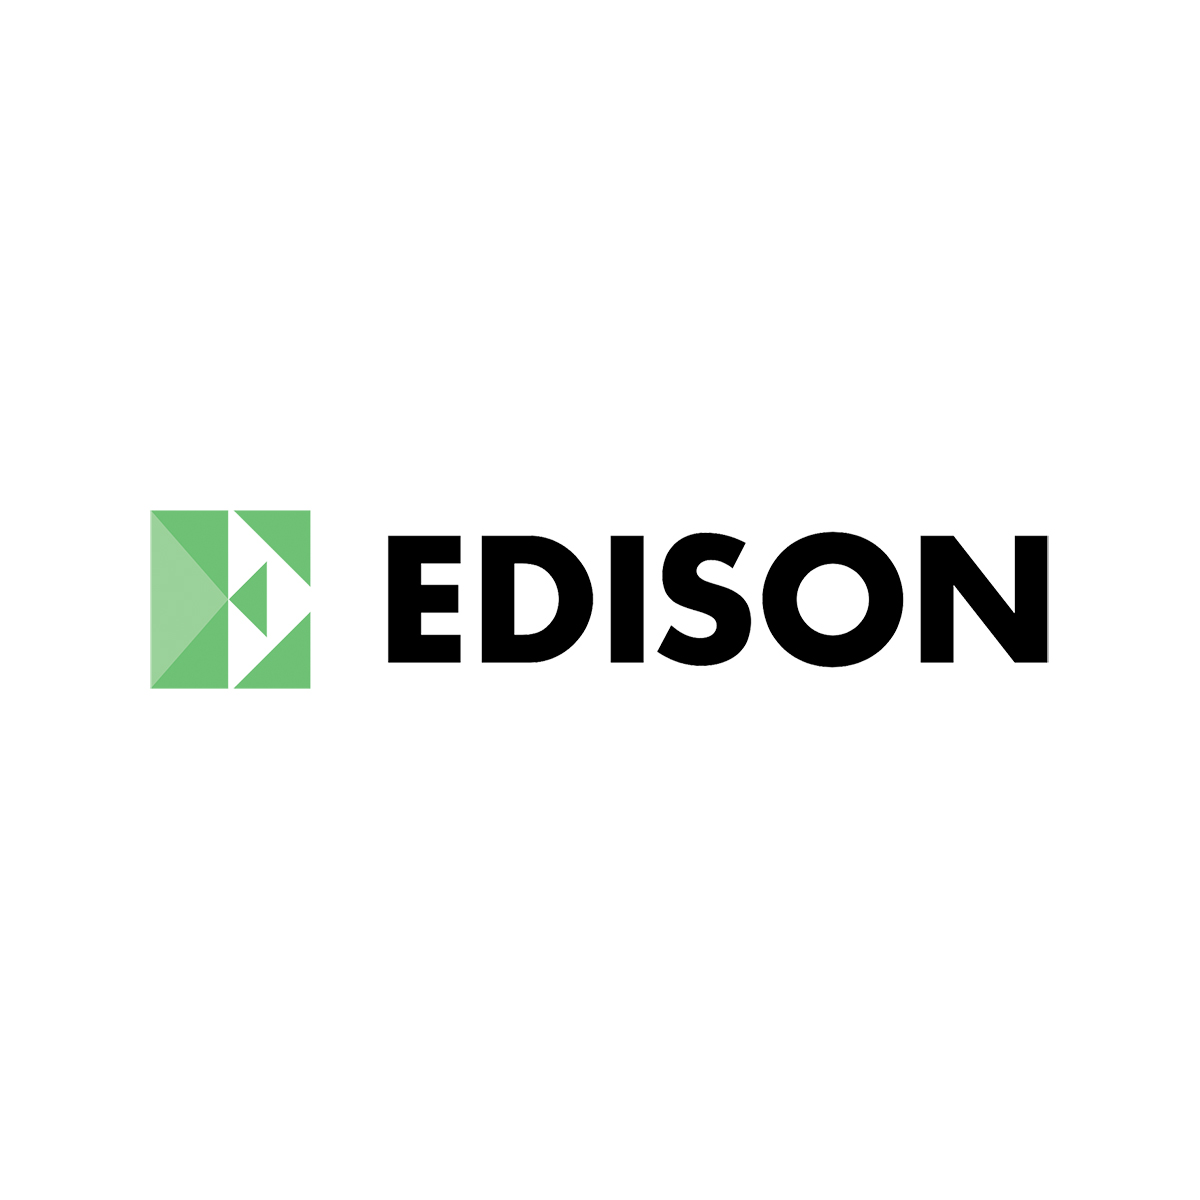 B- Edison.jpg